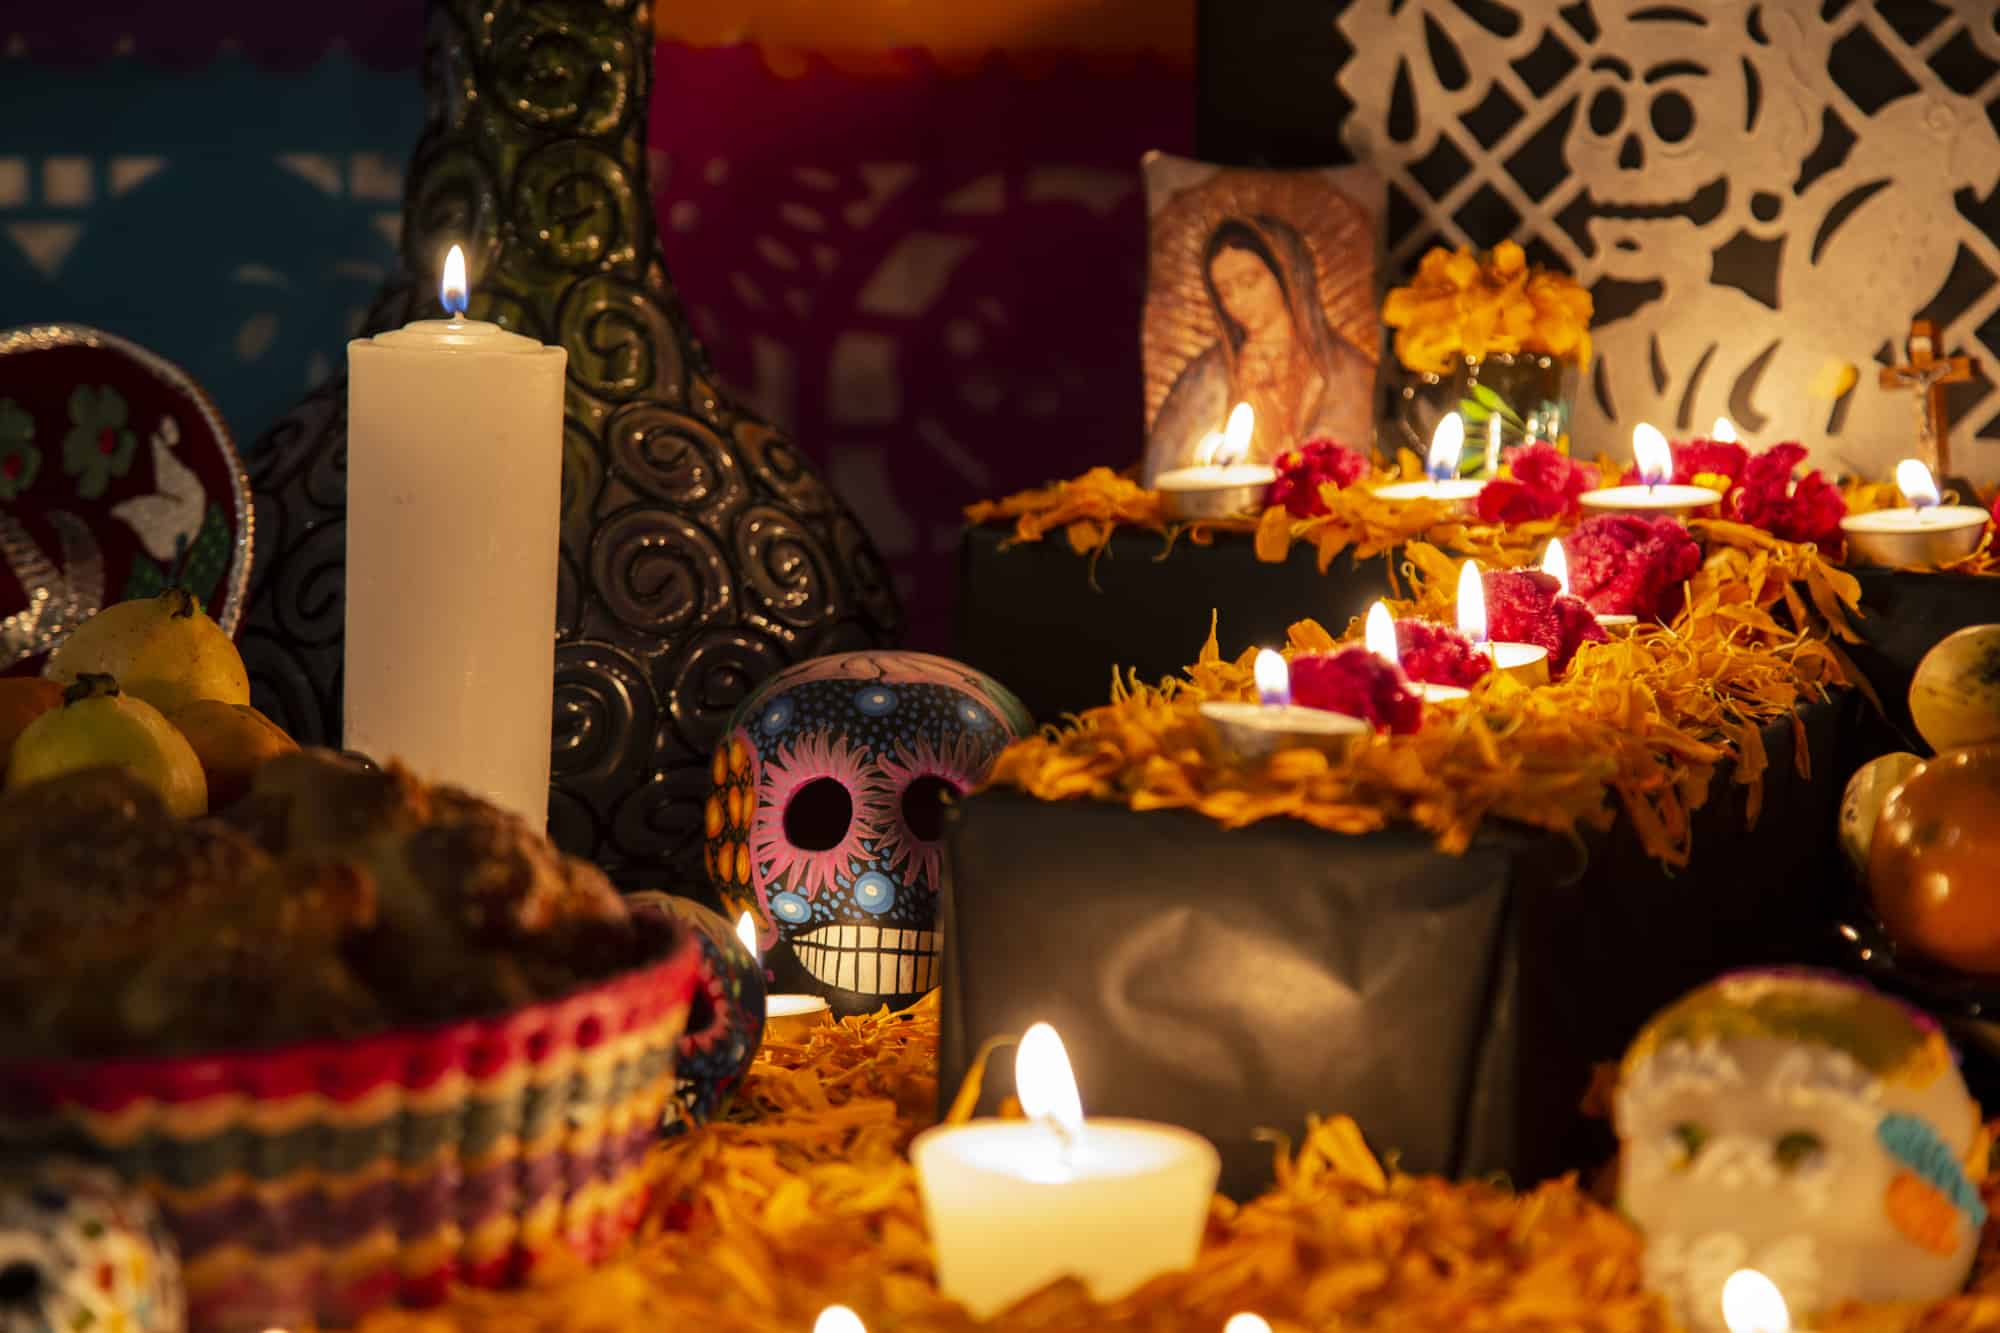 Does Spain celebrate Día de los Muertos? (Day of the Dead)